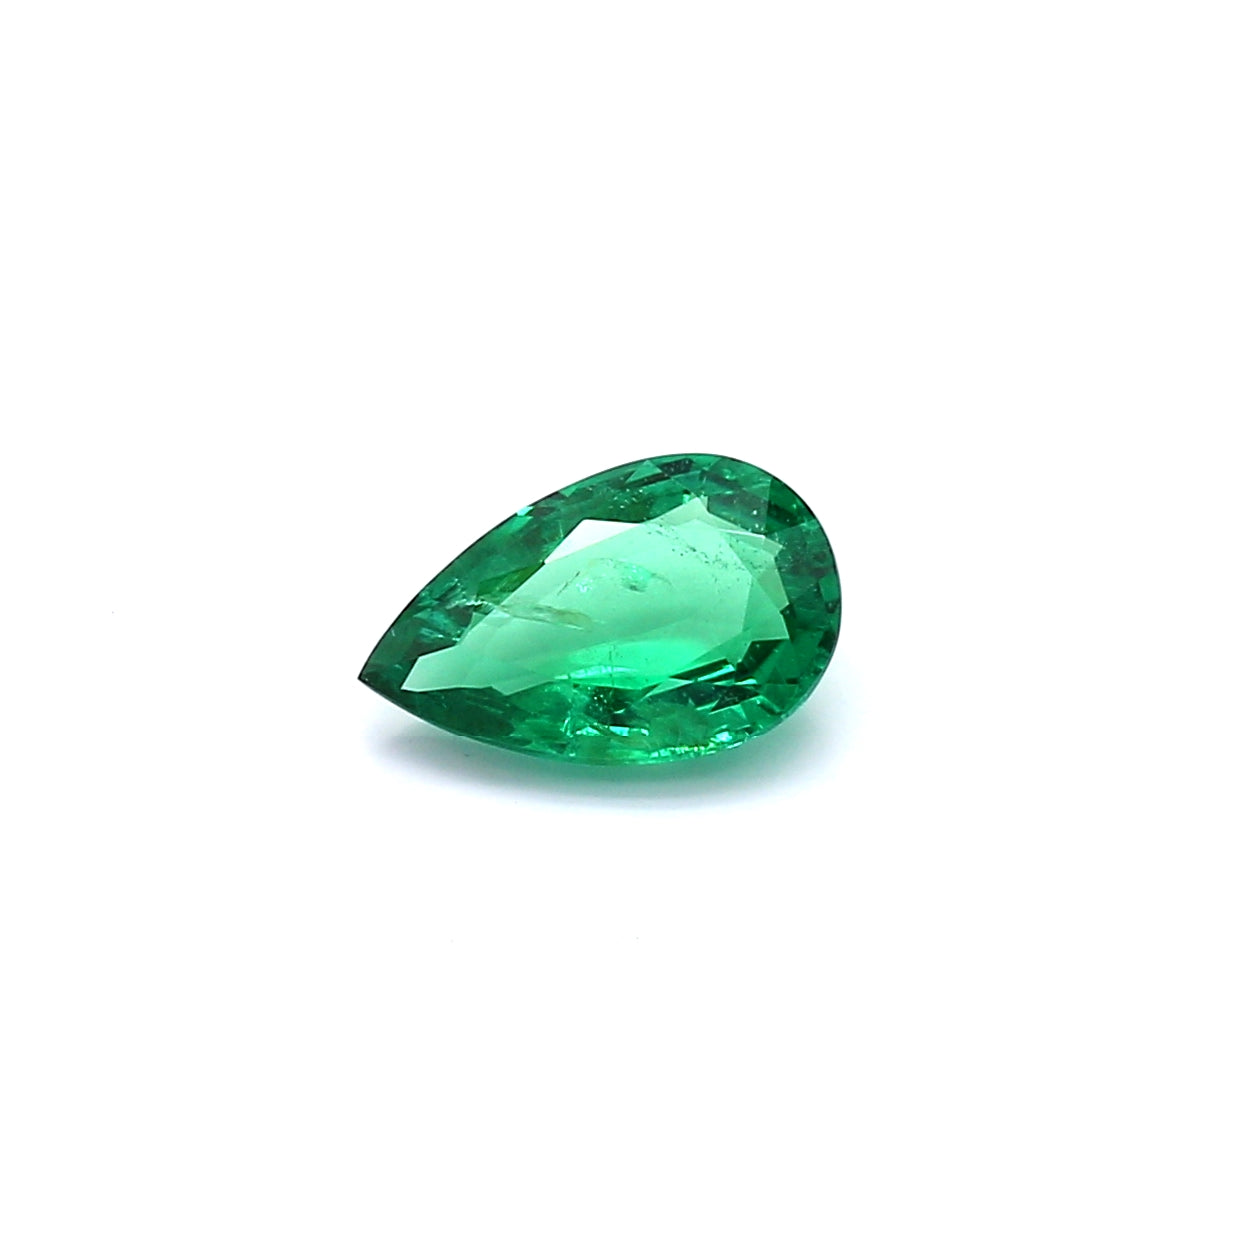 0.80ct Pear Shape Emerald, Minor Oil, Russia - 8.60 x 5.45 x 2.93mm